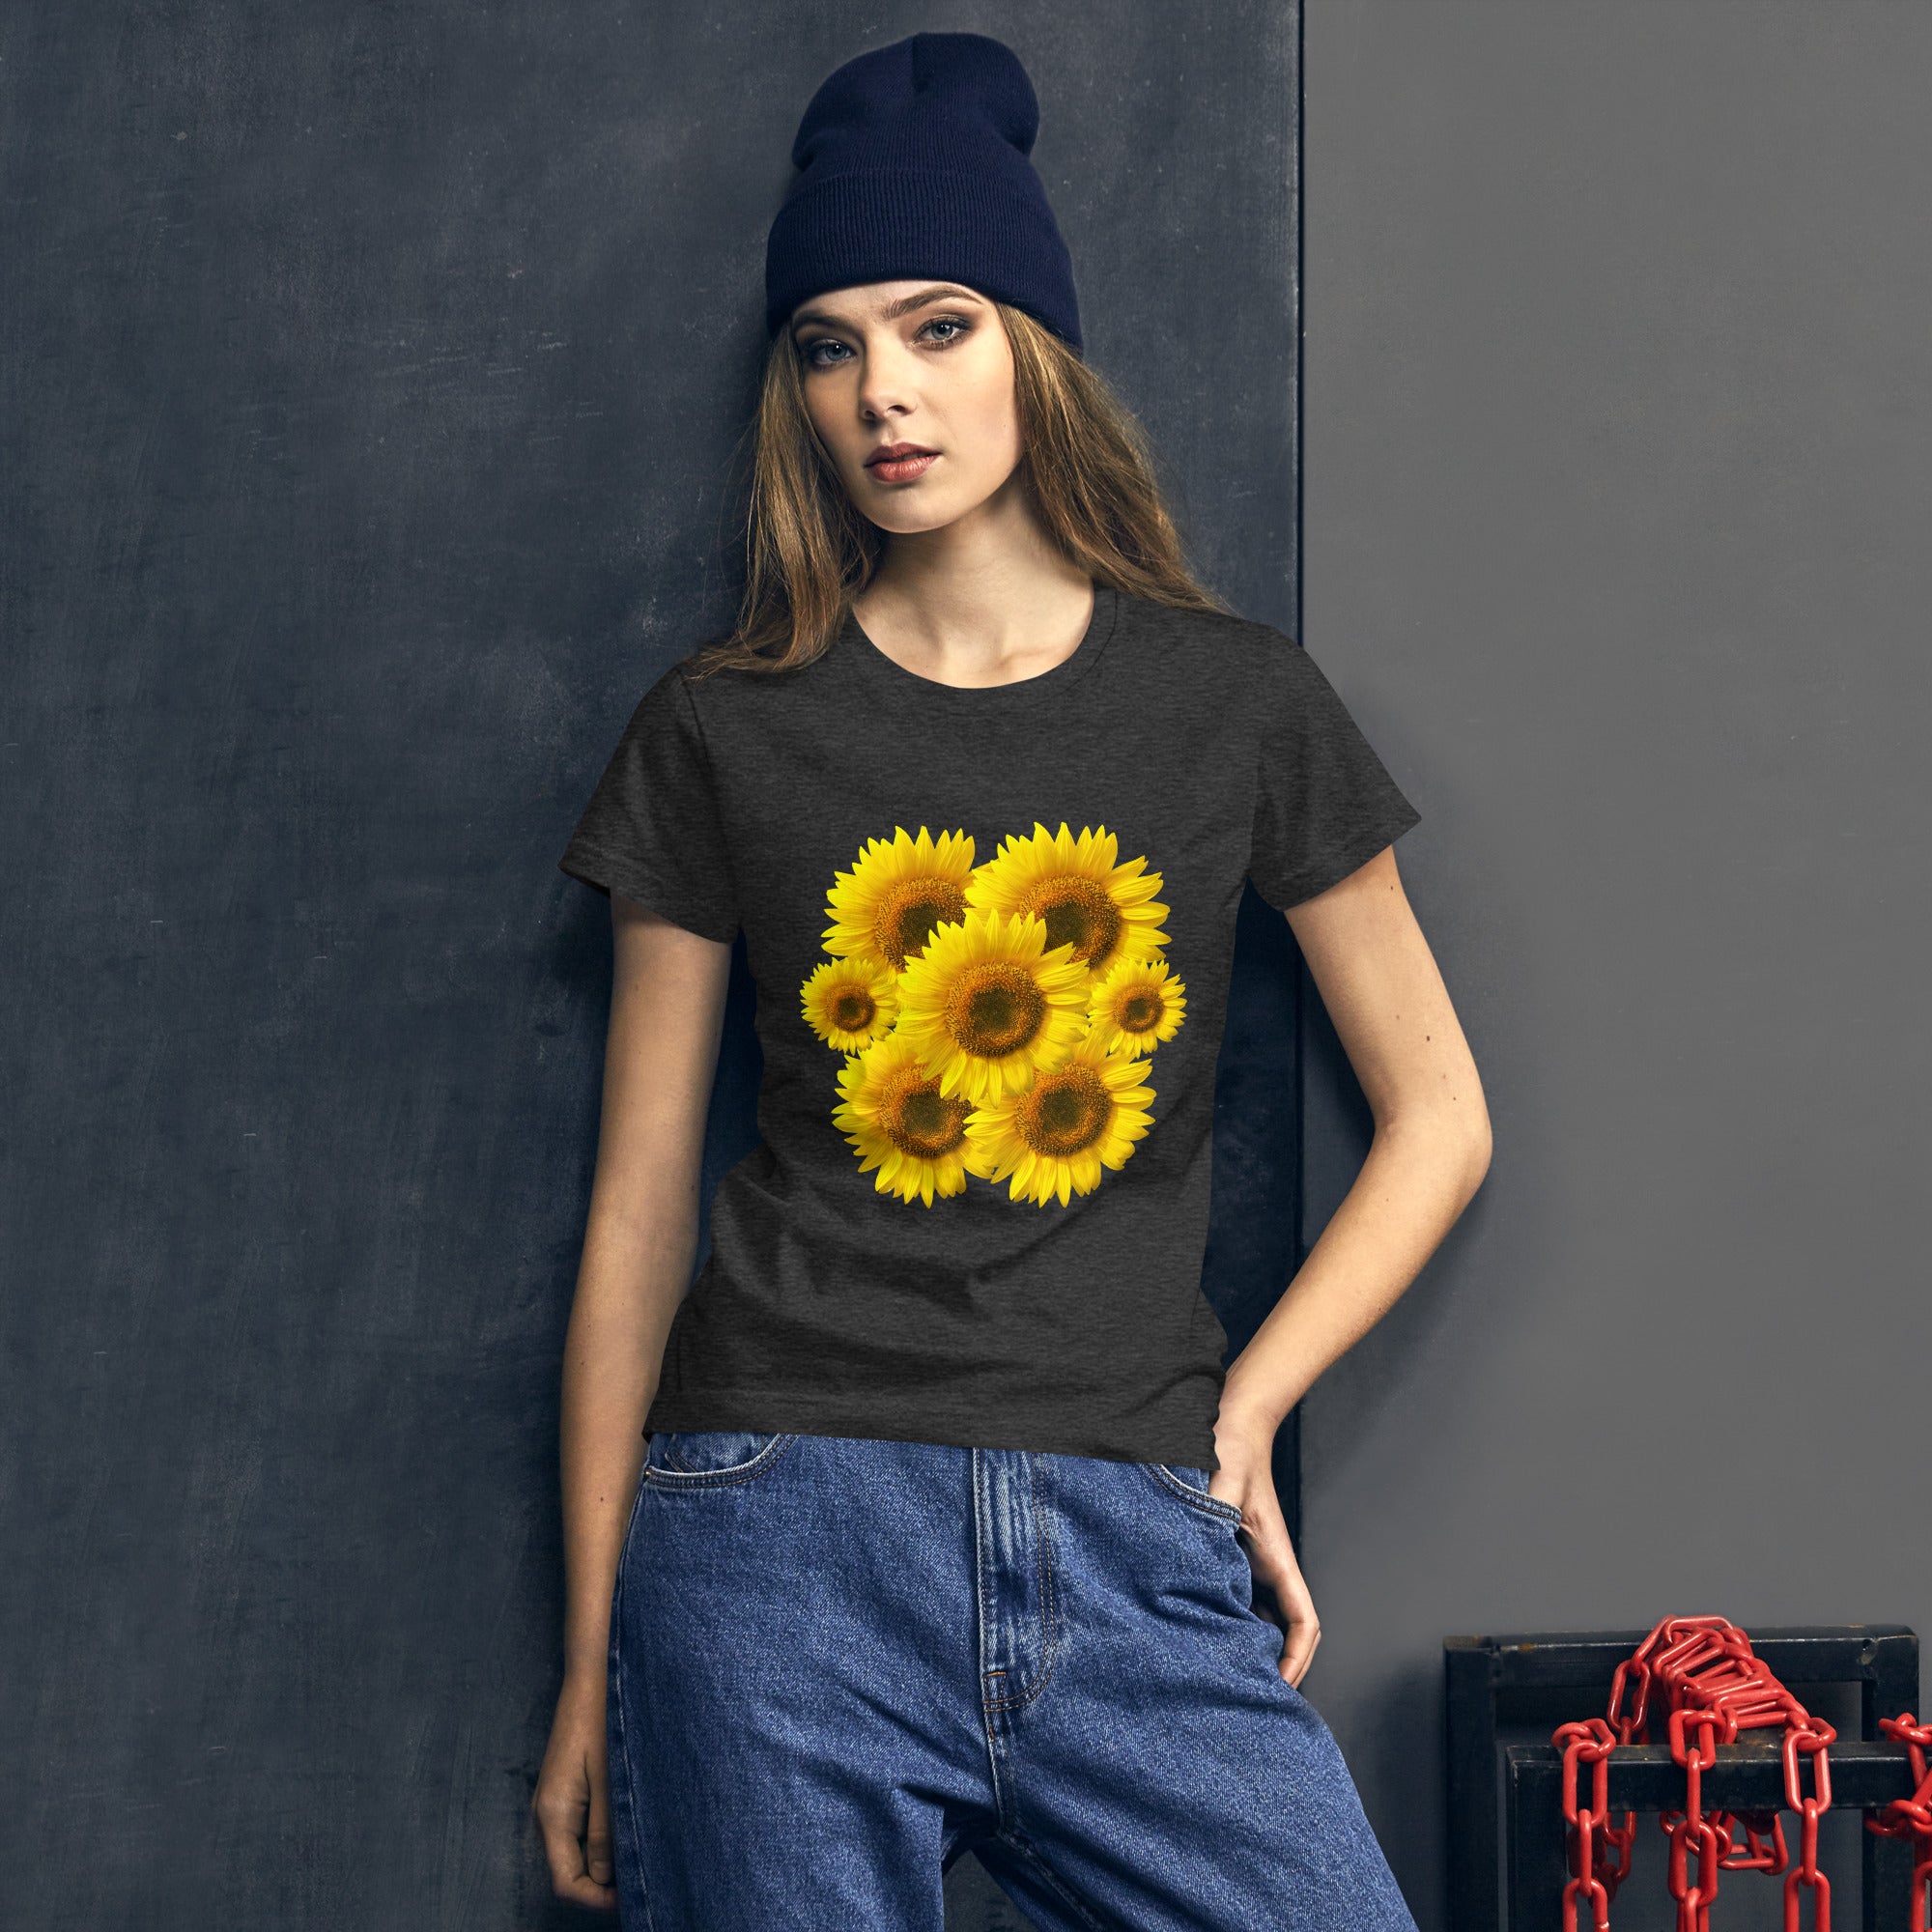 Sunflower-Women's short sleeve t-shirt